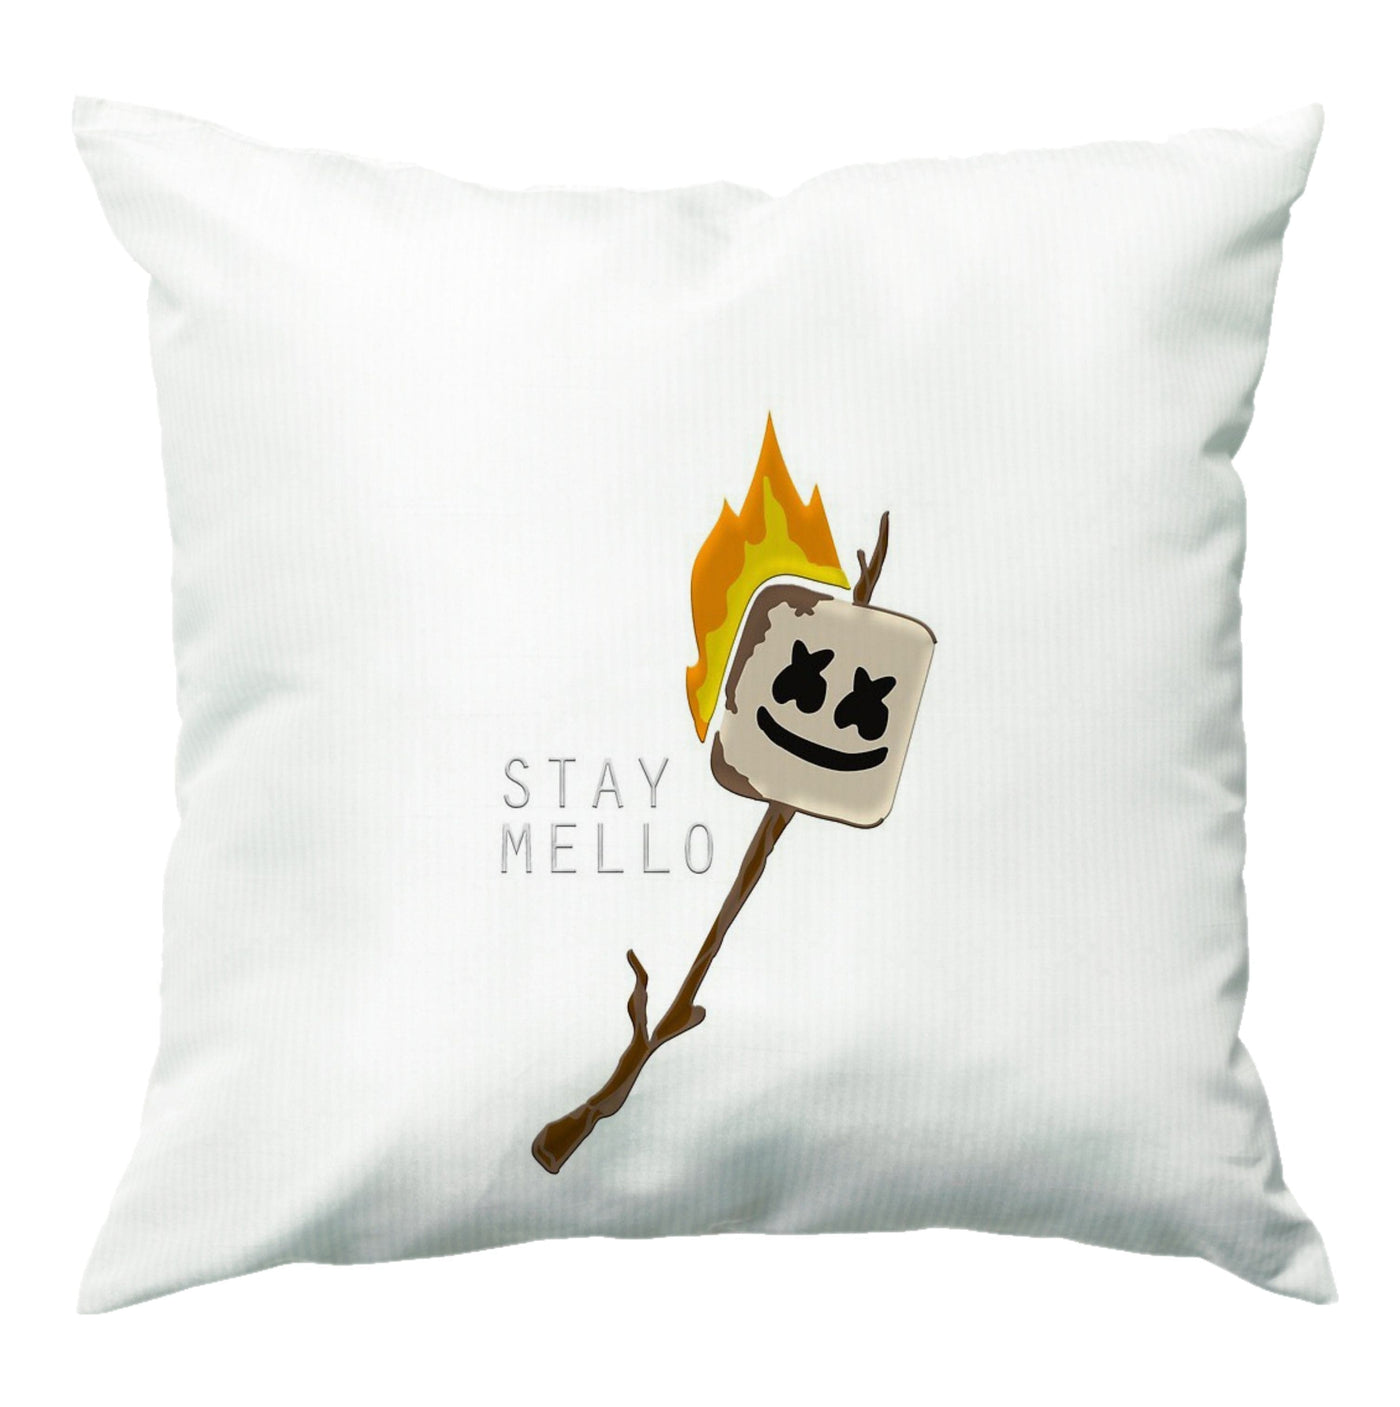 Stay Mello Marshmellow - Marshmello Cushion